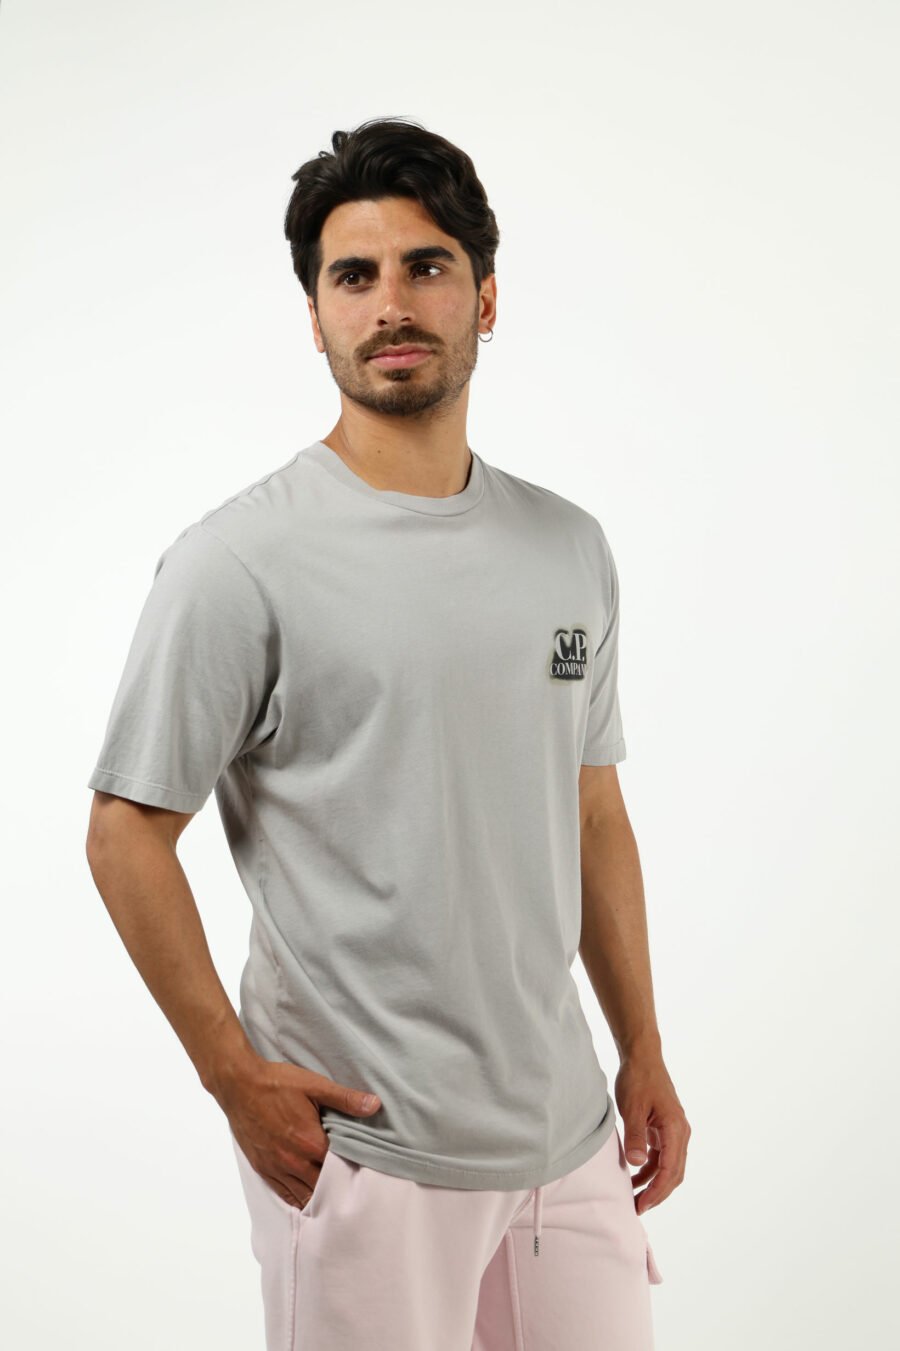 Camiseta gris con minilogo "cp" quemado - number13452